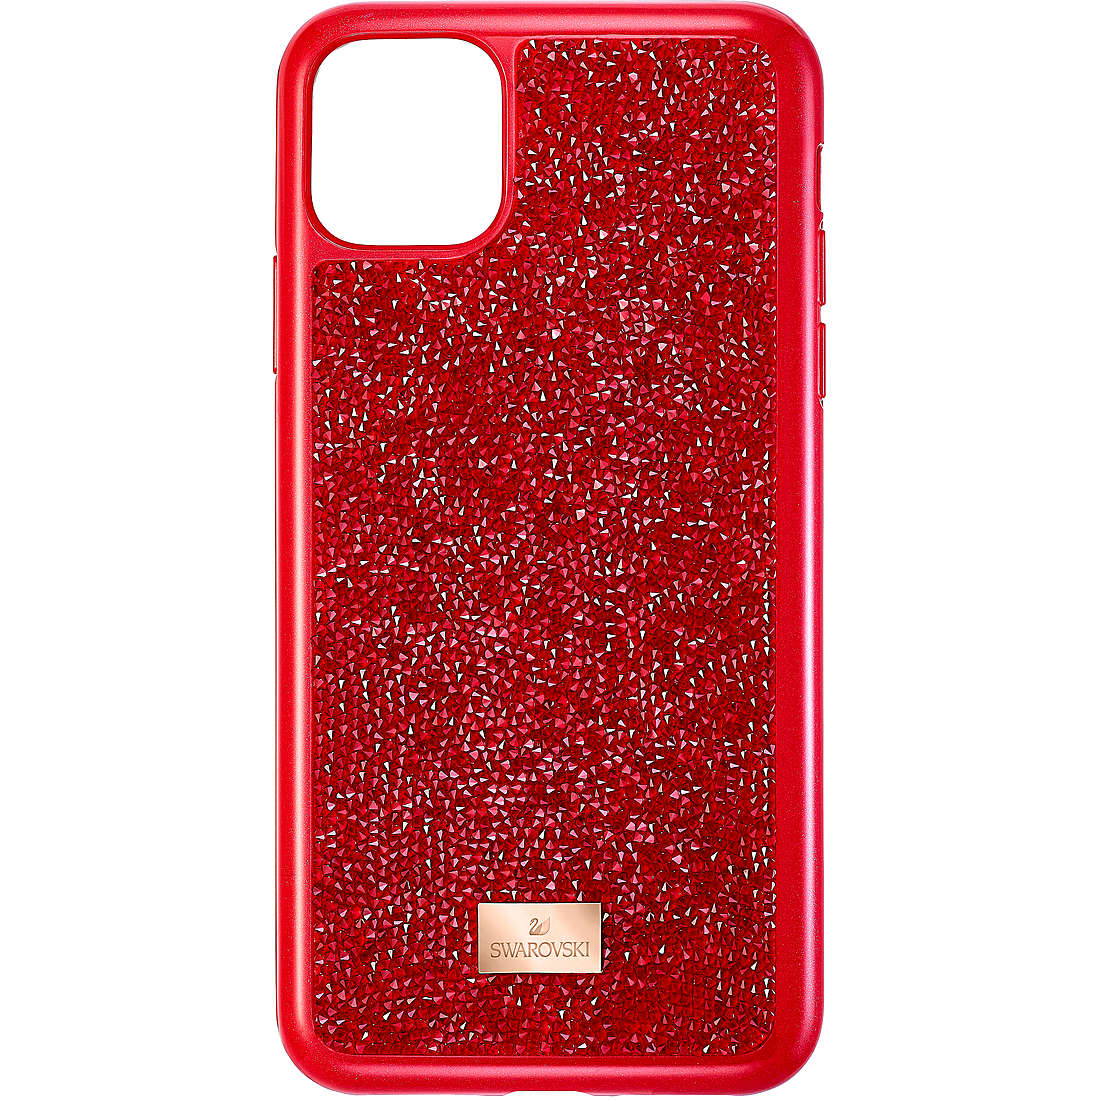 smartphone case Swarovski Glam Rock 5531143